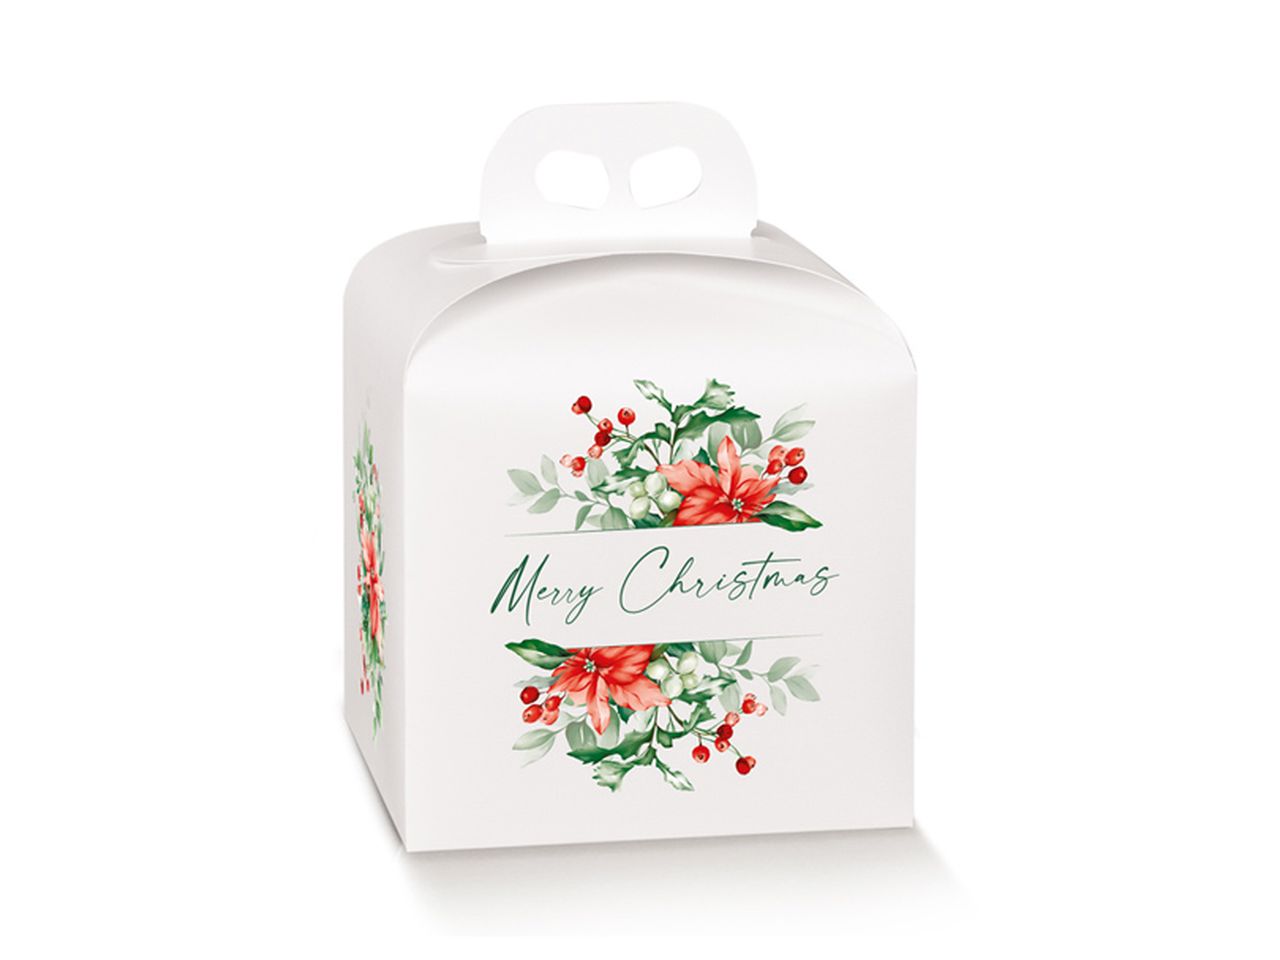 Portapanettone in cartone teso con maniglia e decorazione fiori natalizi misura 200x200x180mm